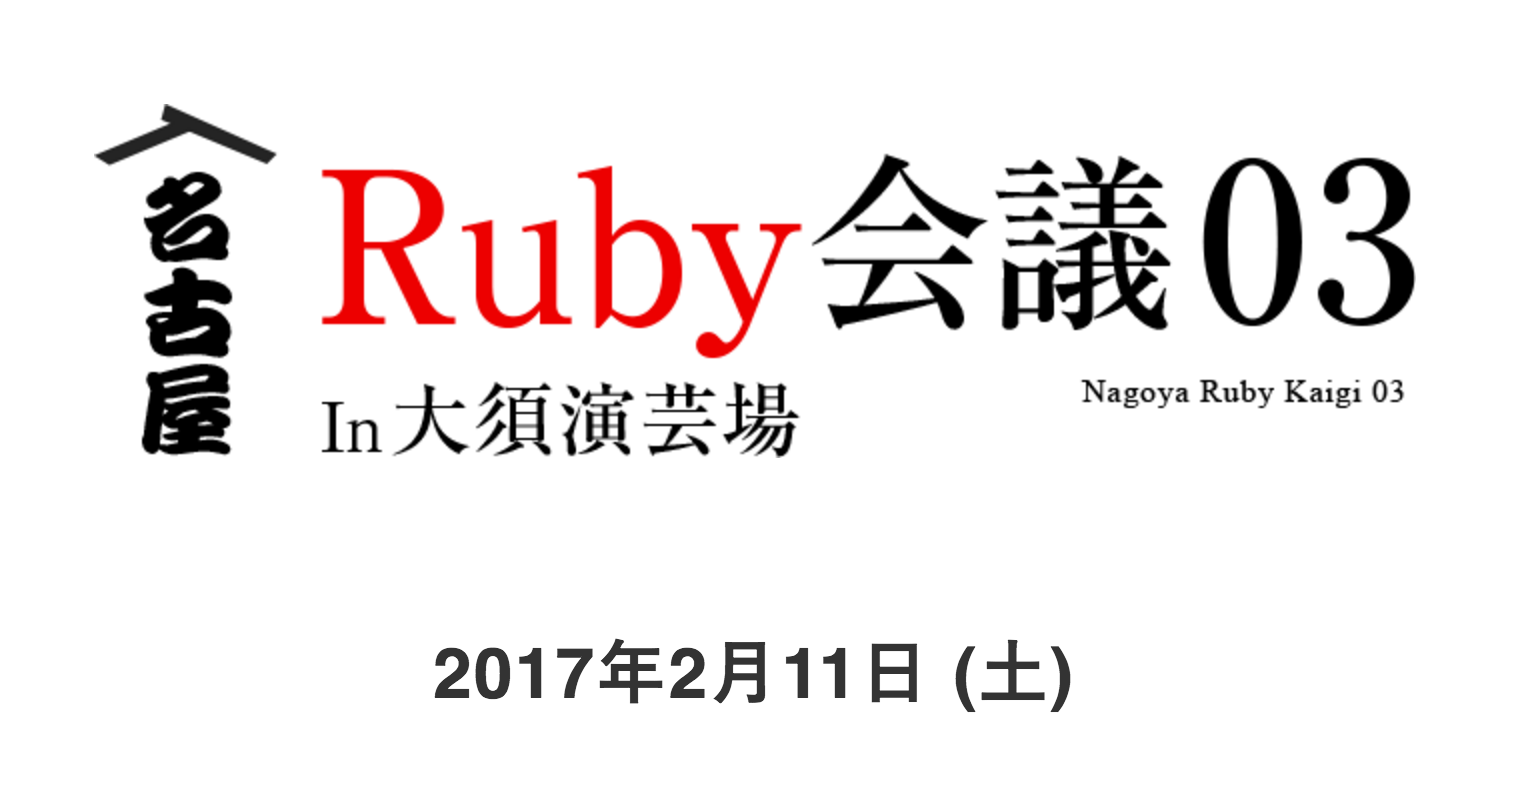 名古屋Ruby会議03に協賛します